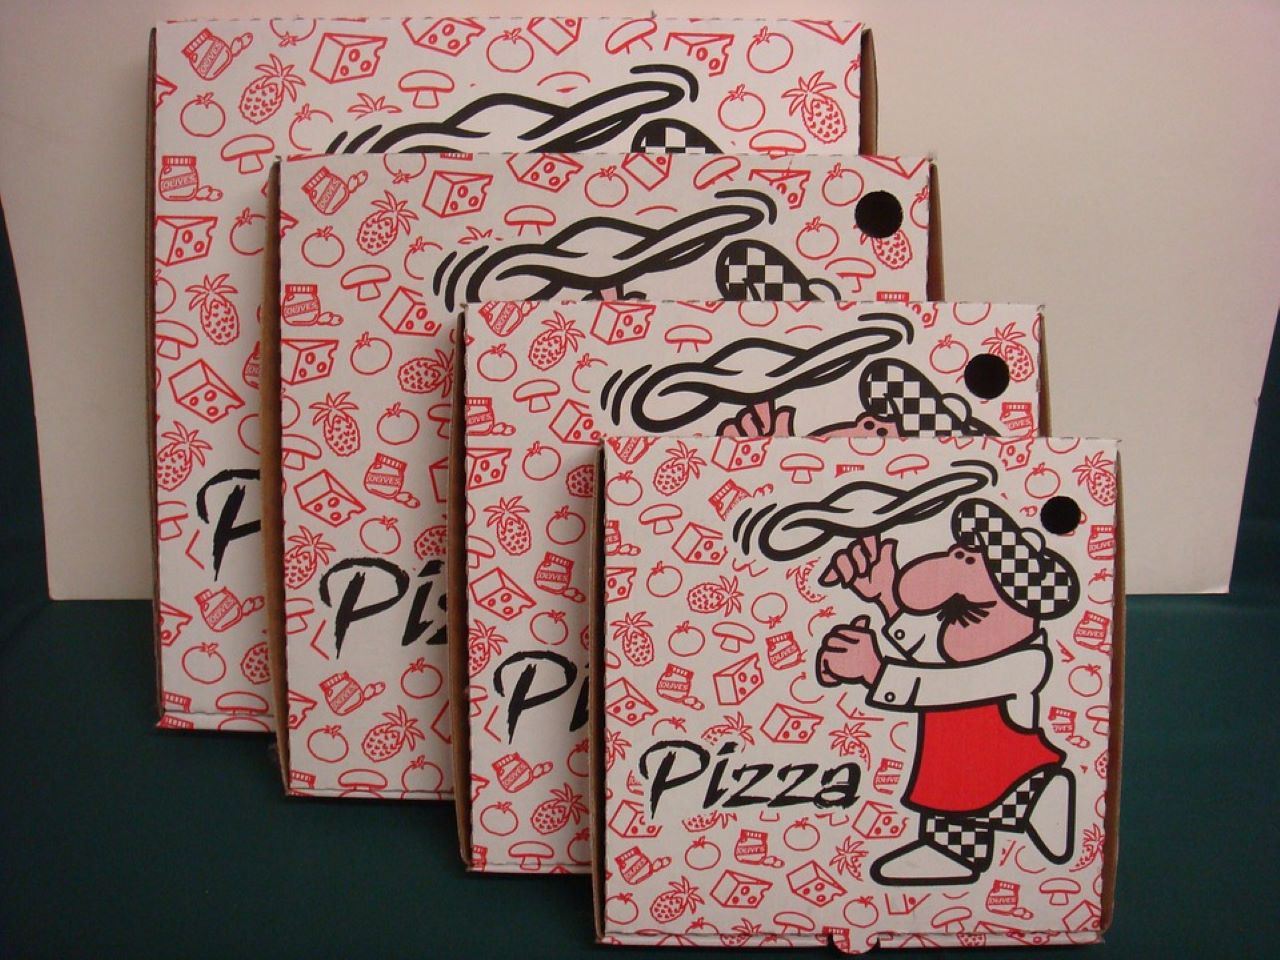 buchi nei cartoni della pizza